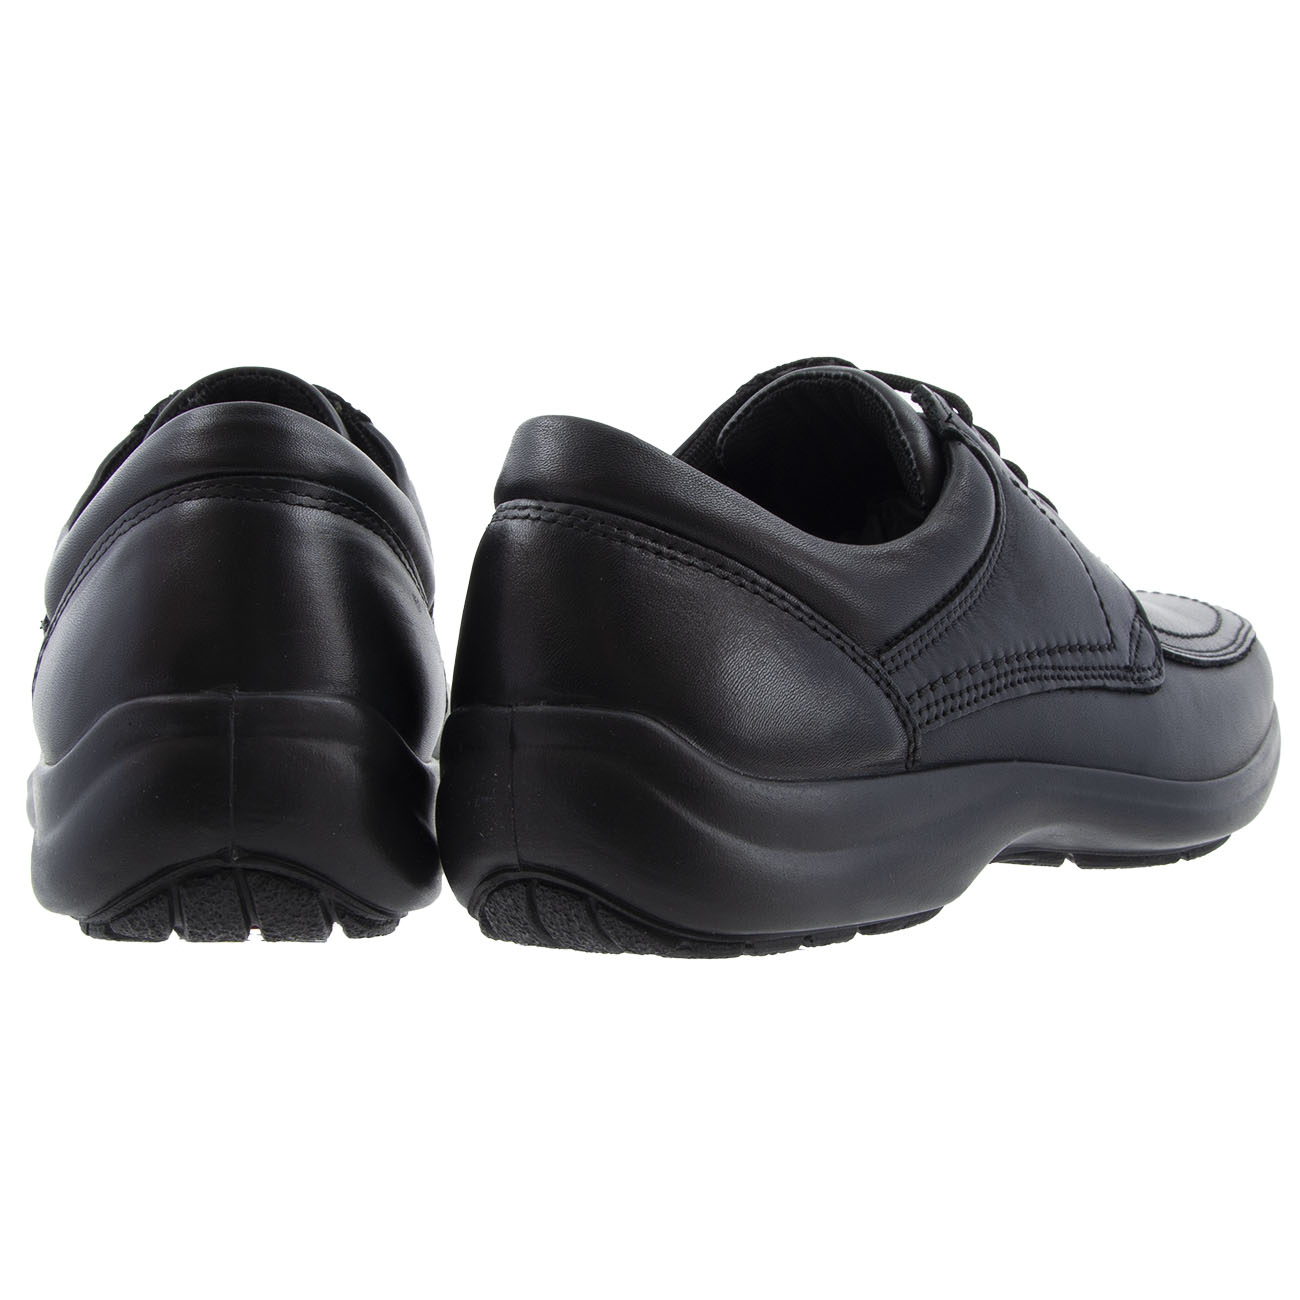 Ανδρικό δετό παπούτσι δερμα IMAC 500830